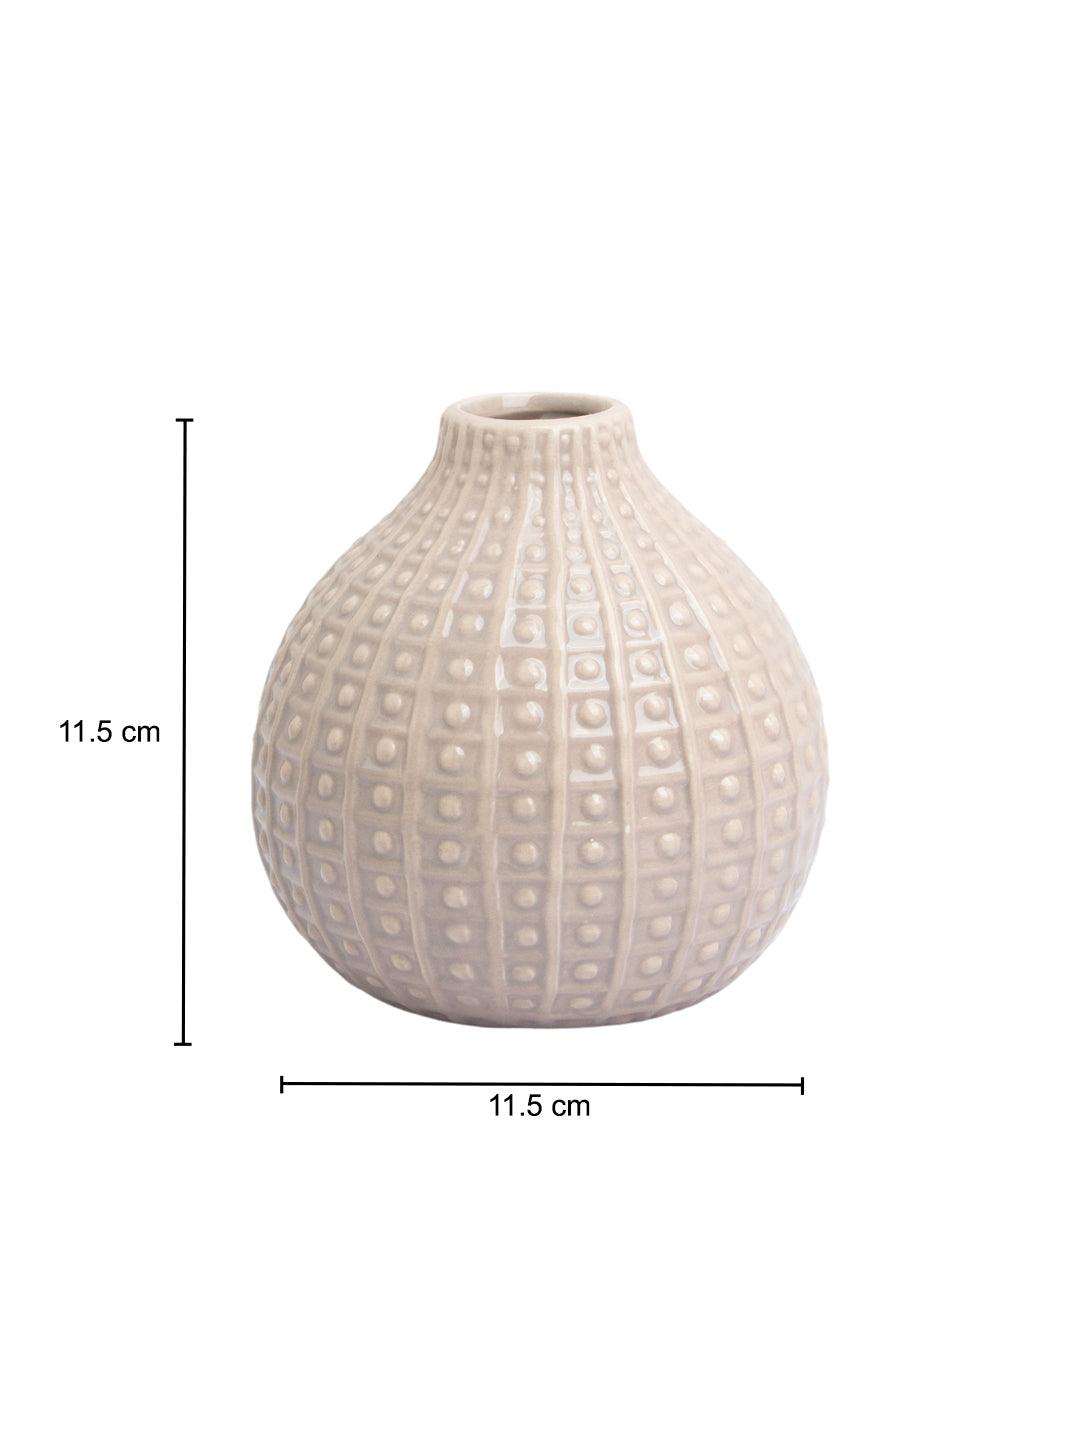 Brown Ceramic Vase - Textured Pattern, Flower Holder - MARKET 99